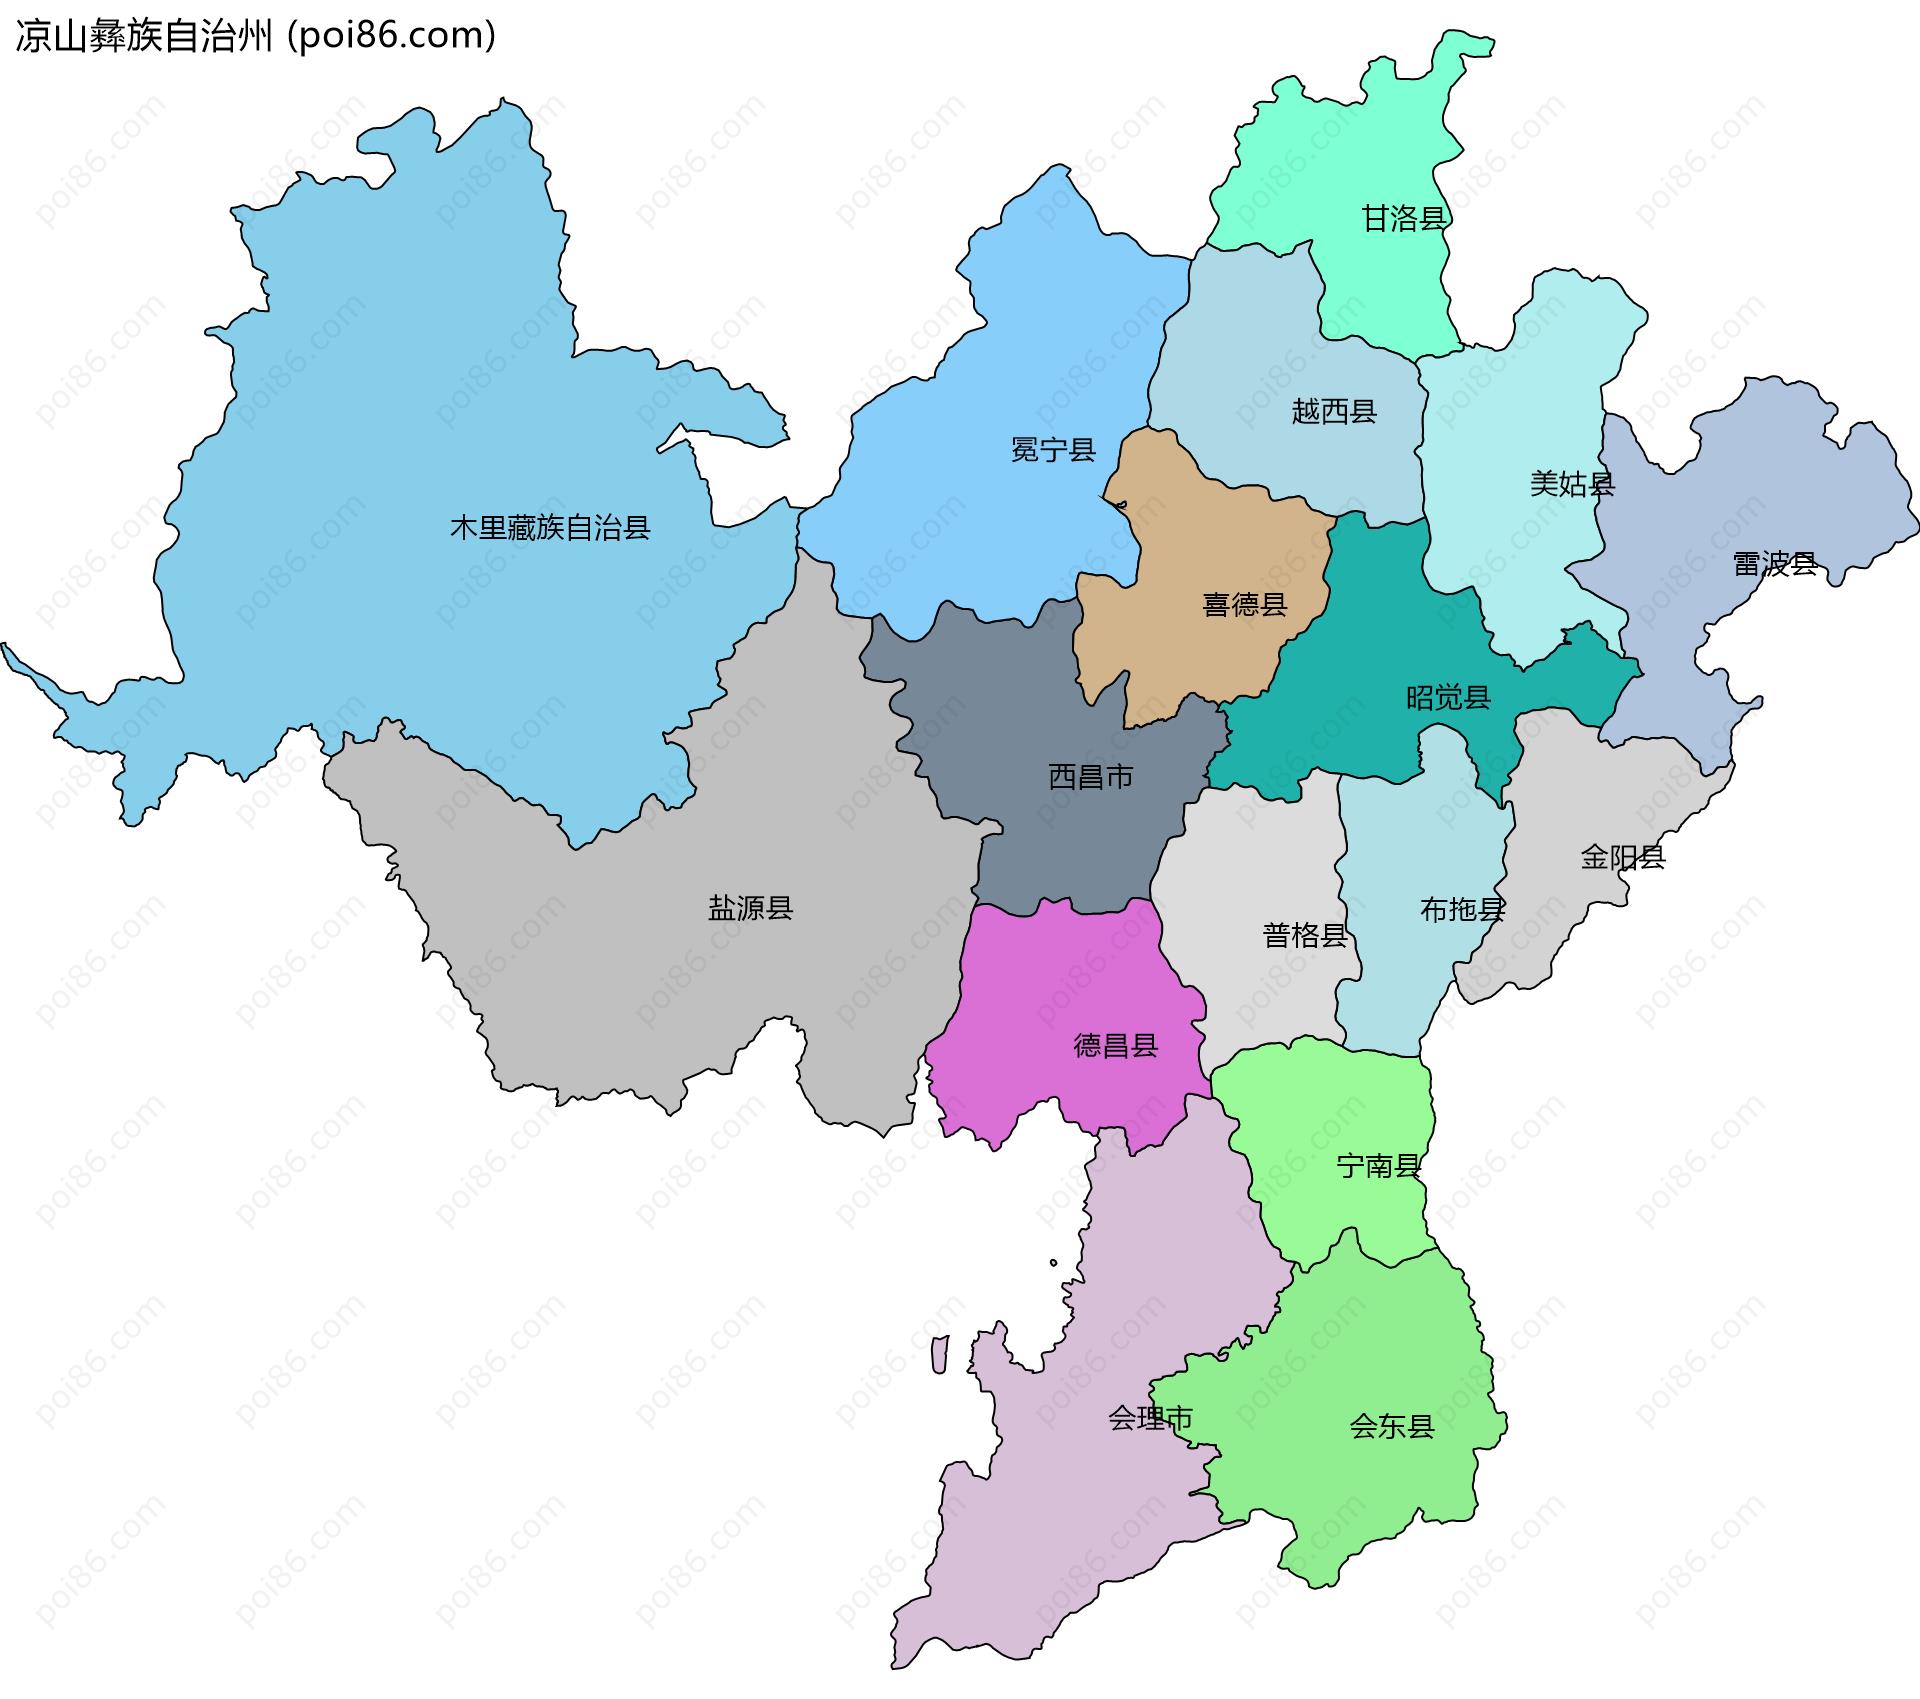 凉山彝族自治州边界地图